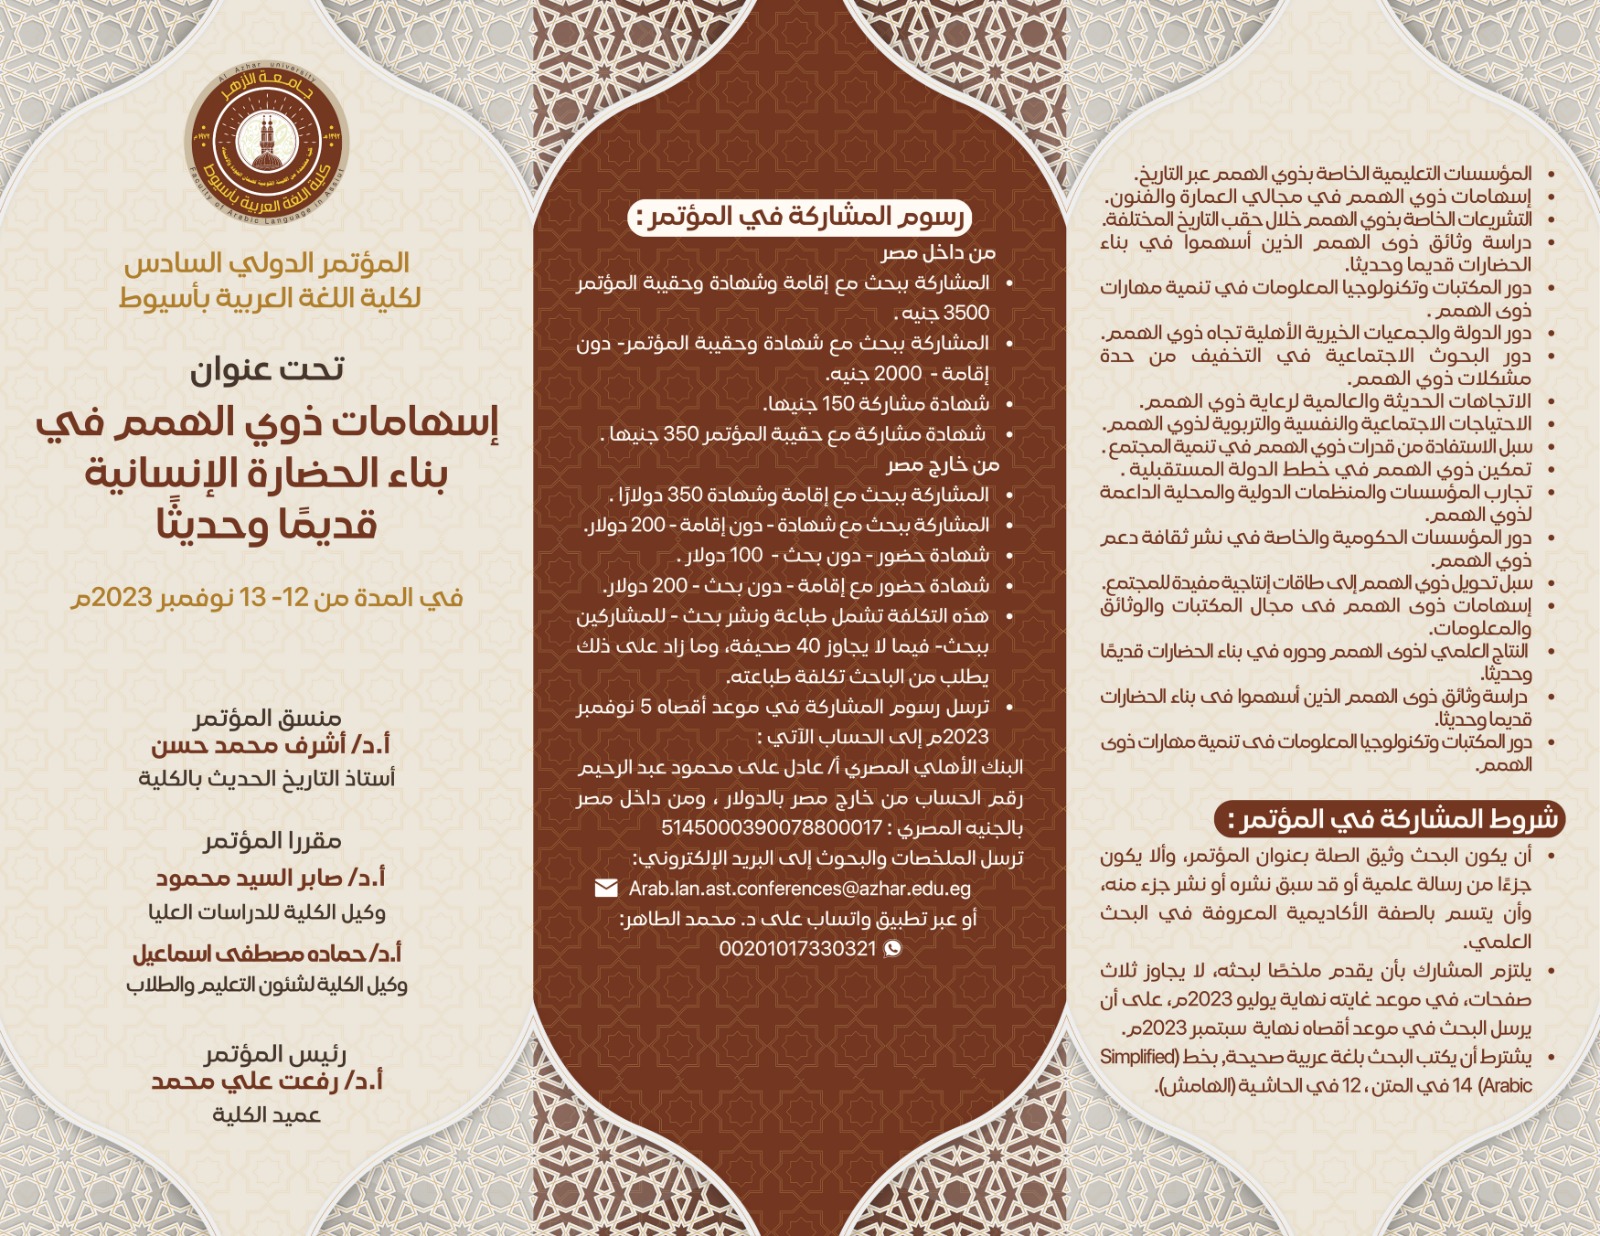 المؤتمر الدولي السادس لكلية اللغة العربية بأسيوط – إعلان